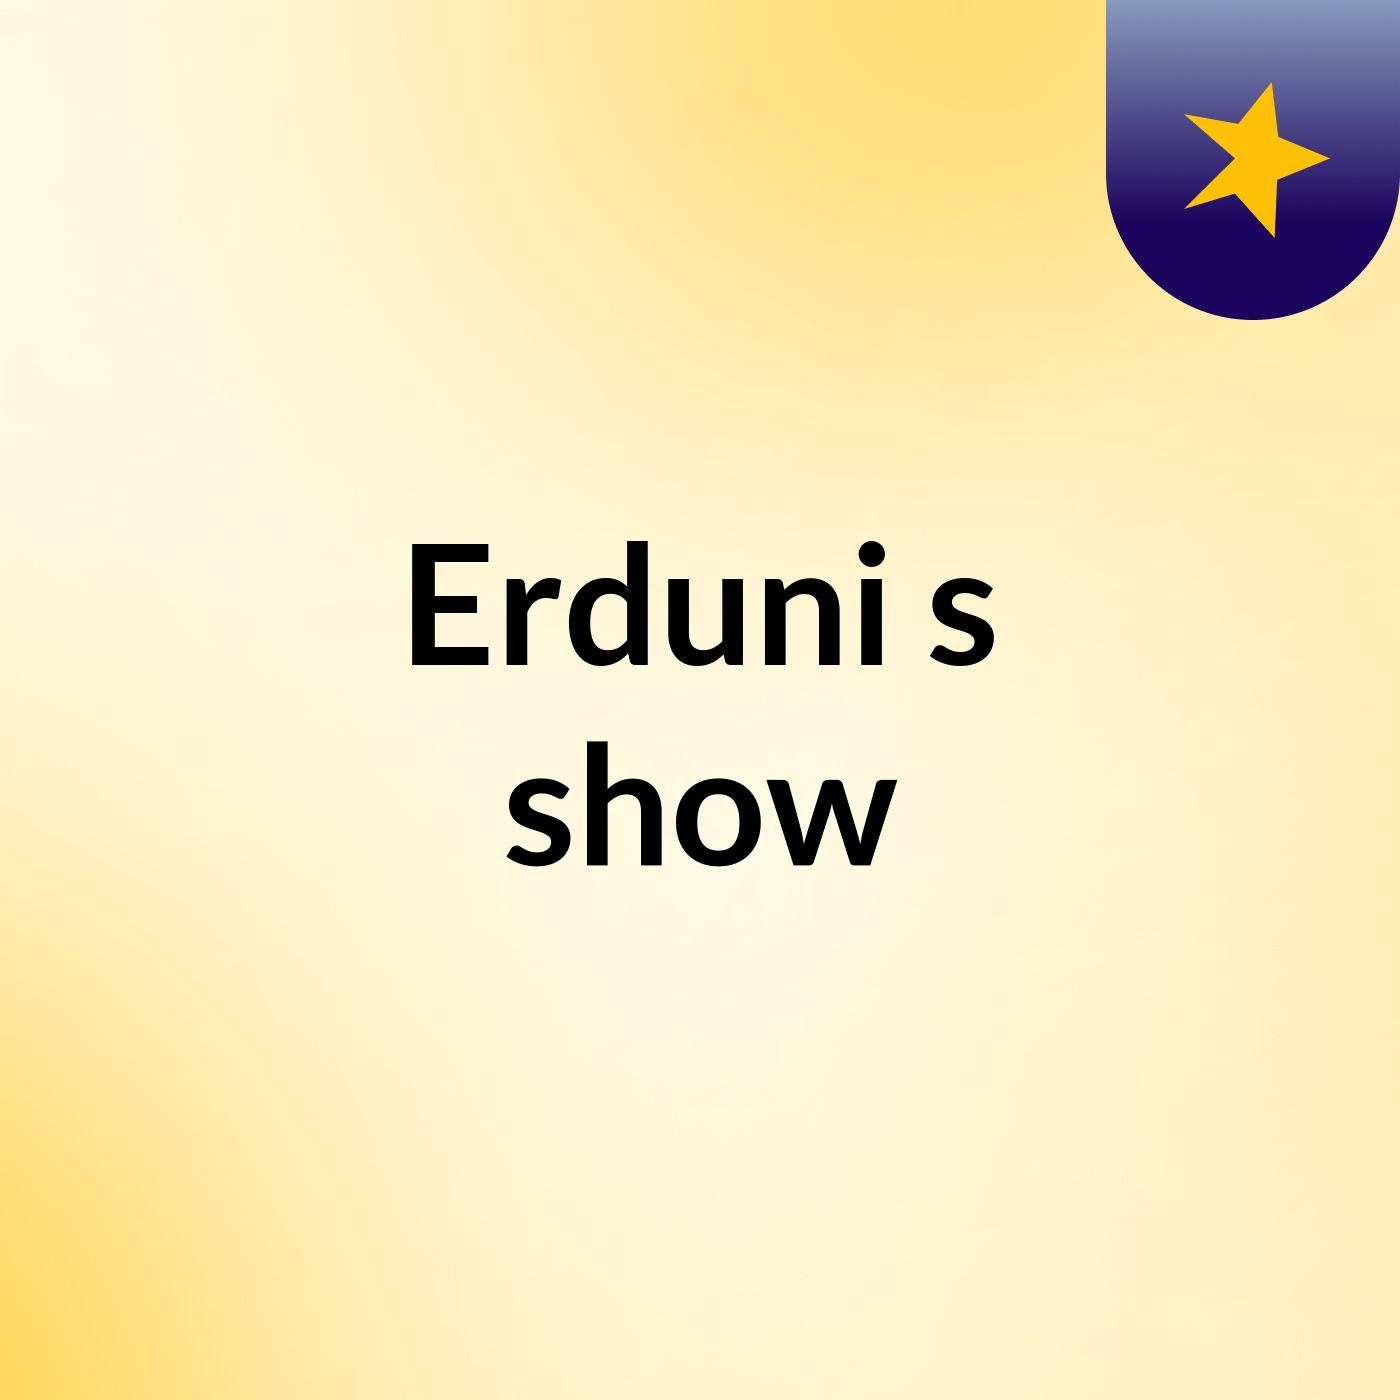 Erduni's show